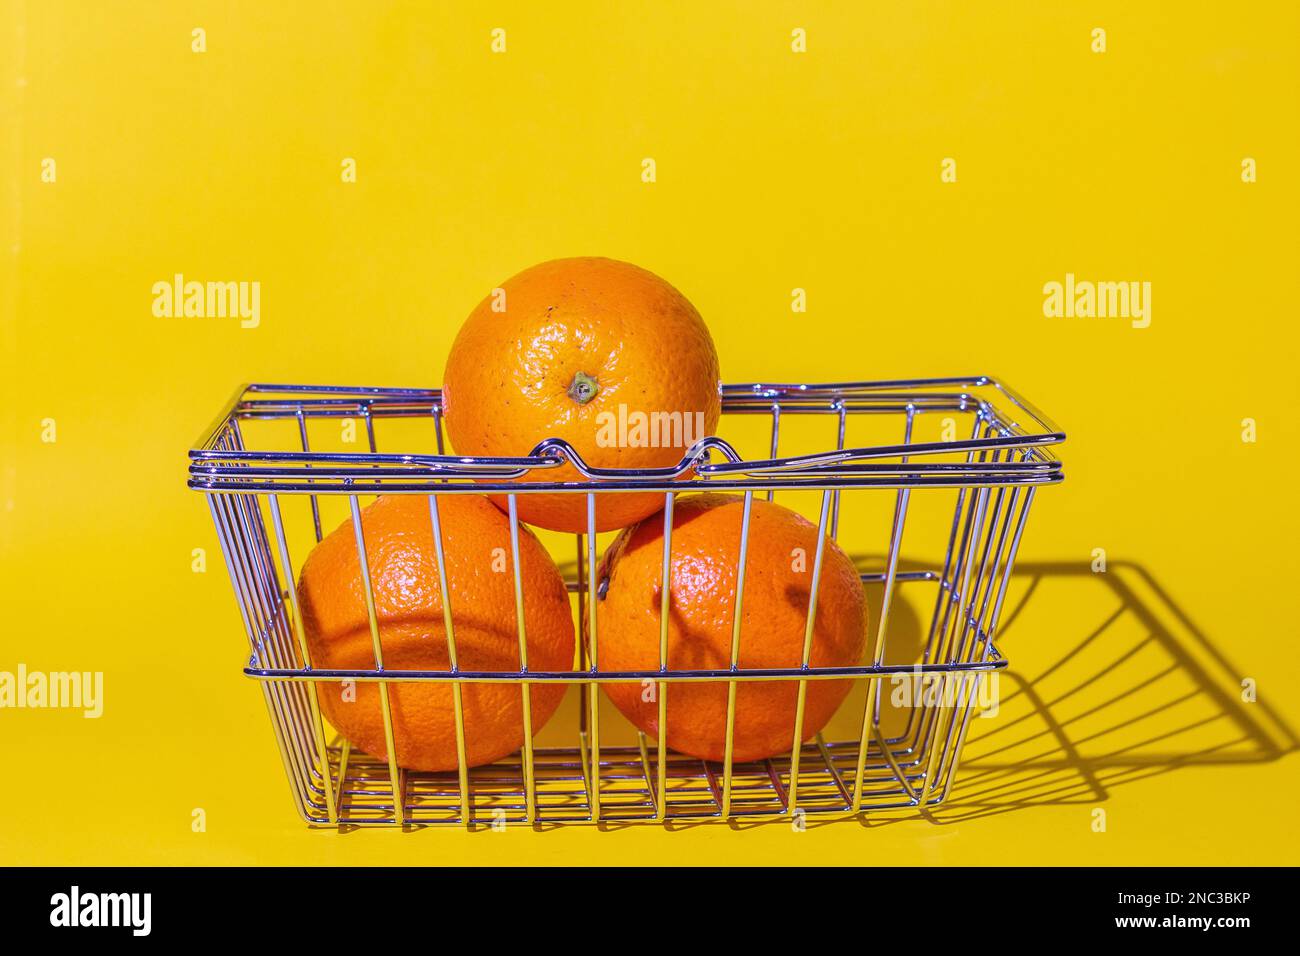 carrello con arance, frutta per il cibo, carrello supermercato, diversi oggetti, arancio rotondo, griglia di metallo, si trova sulla superficie del backgroun giallo Foto Stock